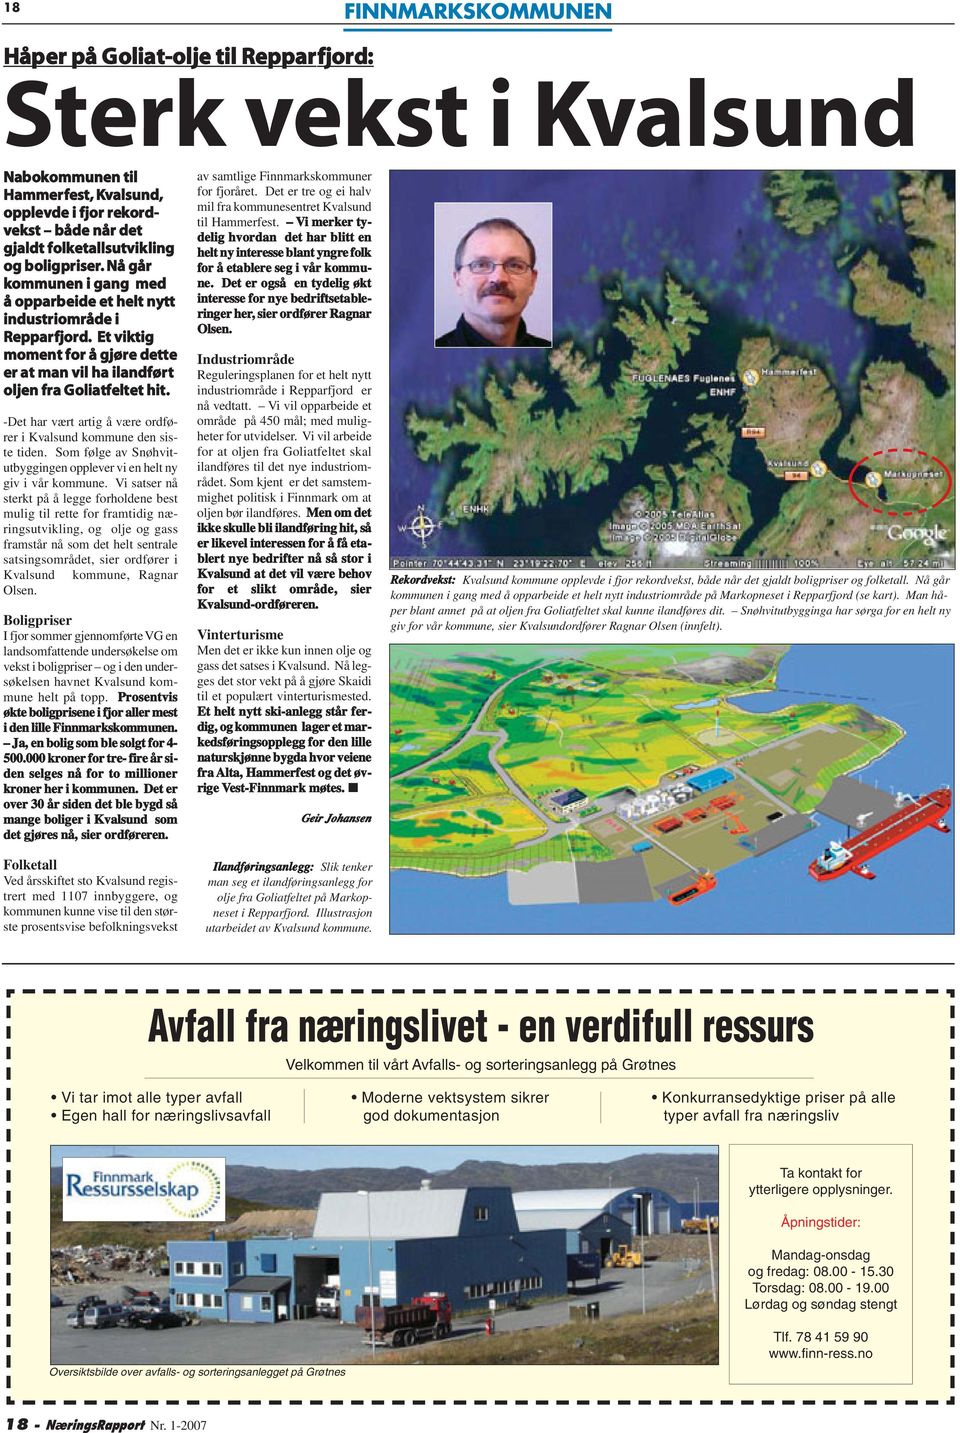 boligpriser. Nå går kommunen i gang med å opparbeide et helt nytt industriområde i Repparfjord. Et viktig moment for å gjøre dette er at man vil ha ilandført oljen fra Goliatfeltet hit.